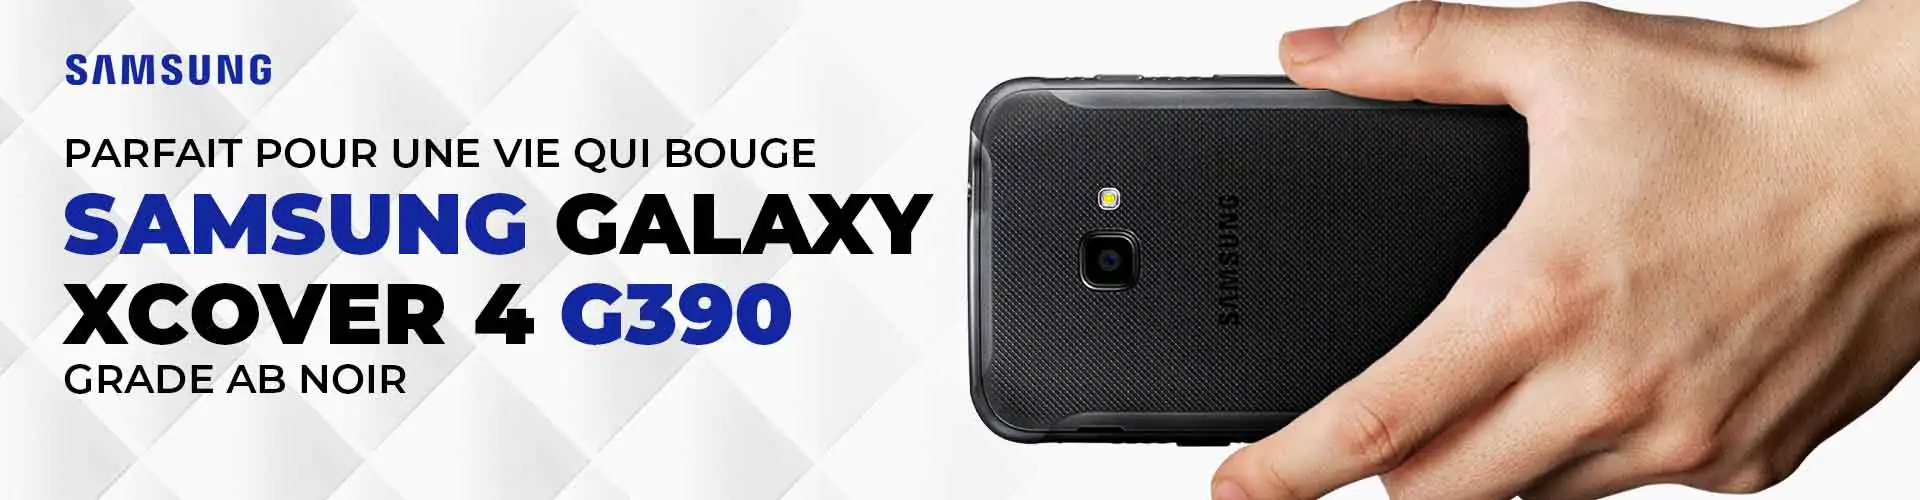 Parfait pour une vie qui bouge Samsung Galaxy Xcover 4 G390 Grade AB noir